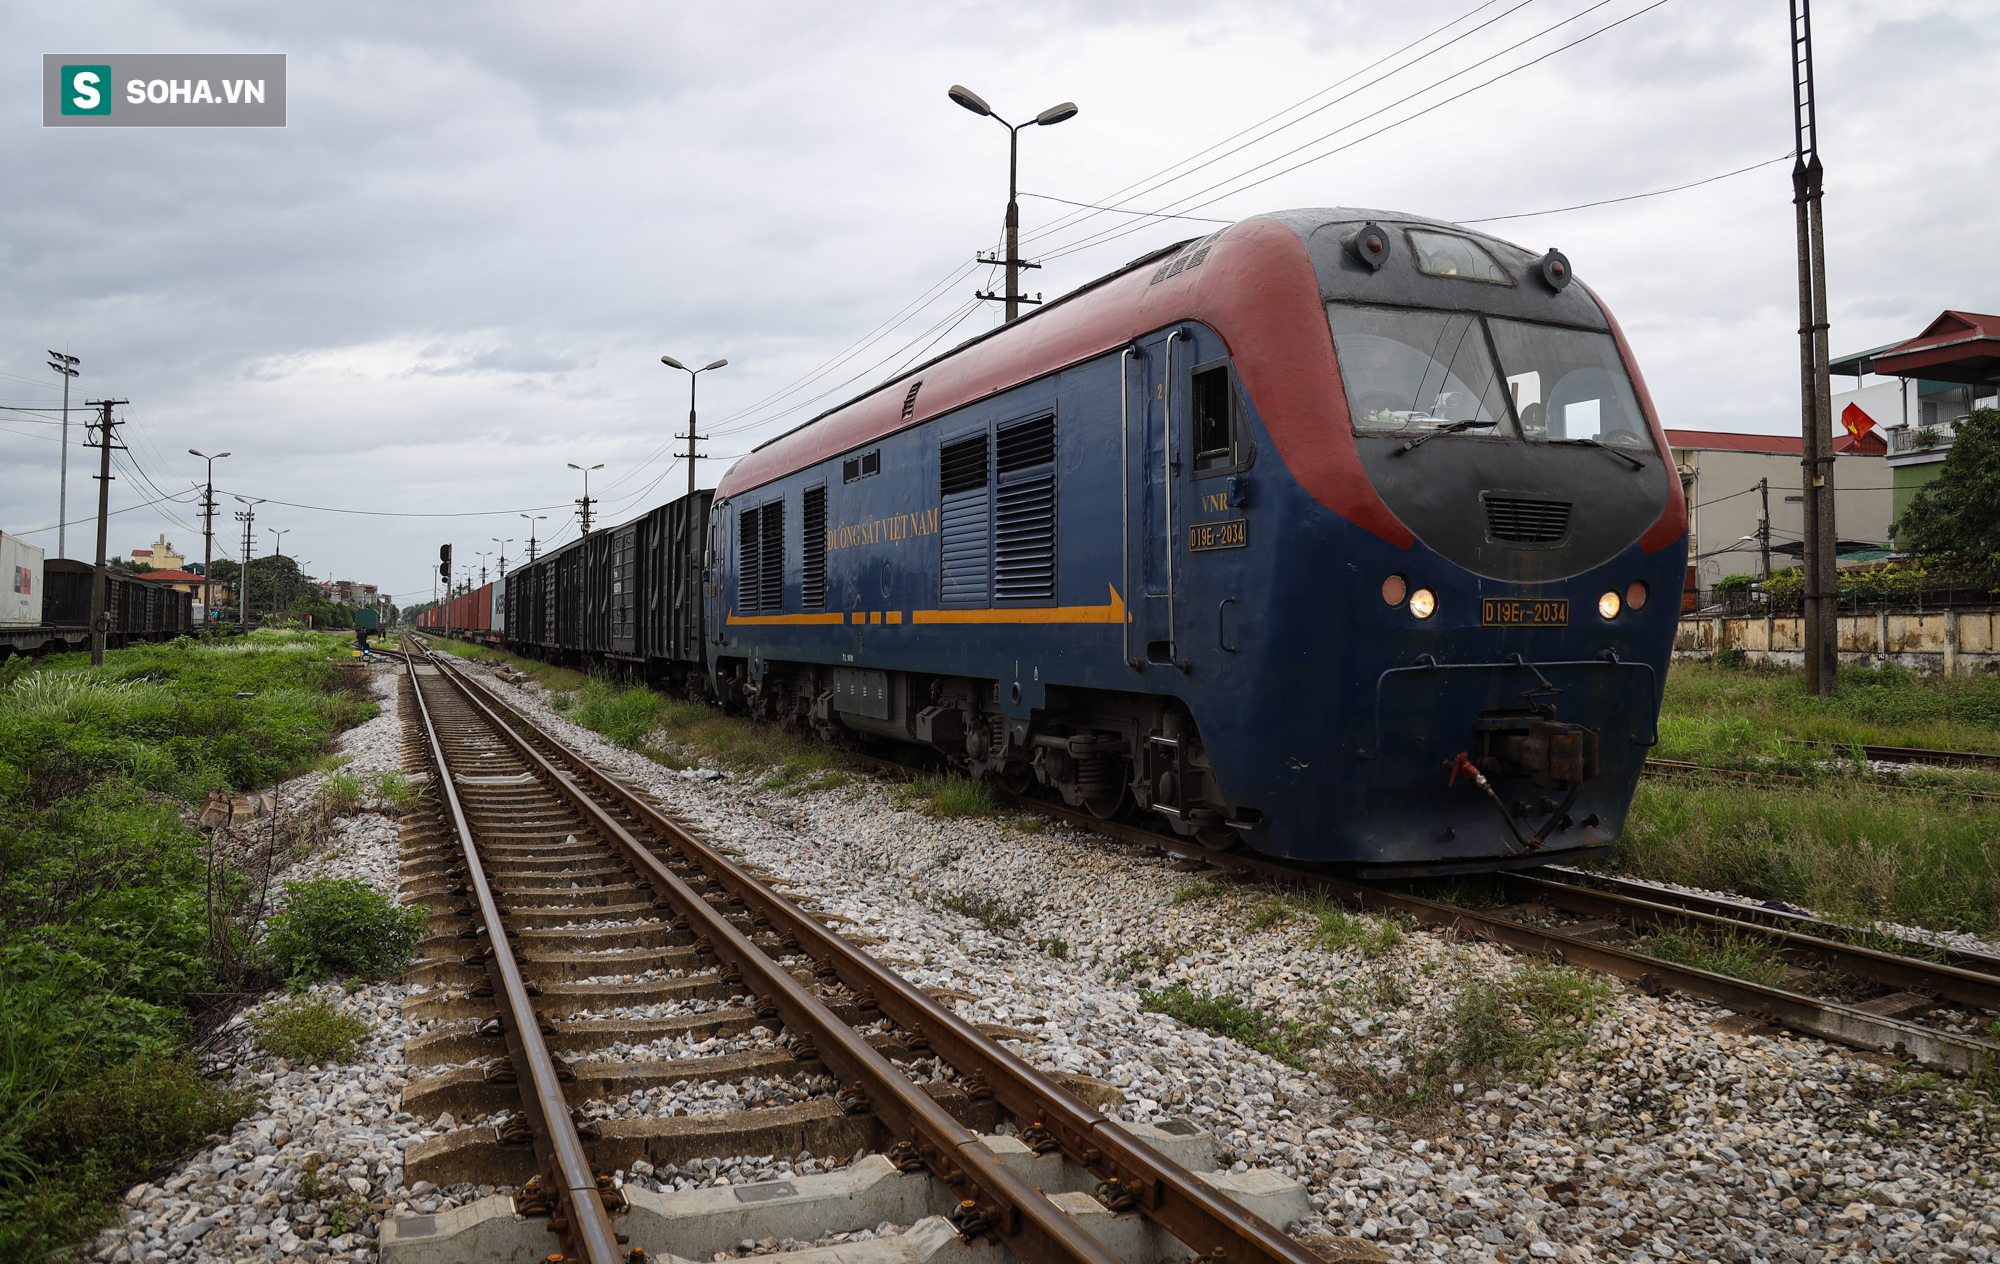 Cận cảnh đoàn tàu đường sắt chở container chạy thẳng từ Việt Nam đi châu Âu - Ảnh 1.